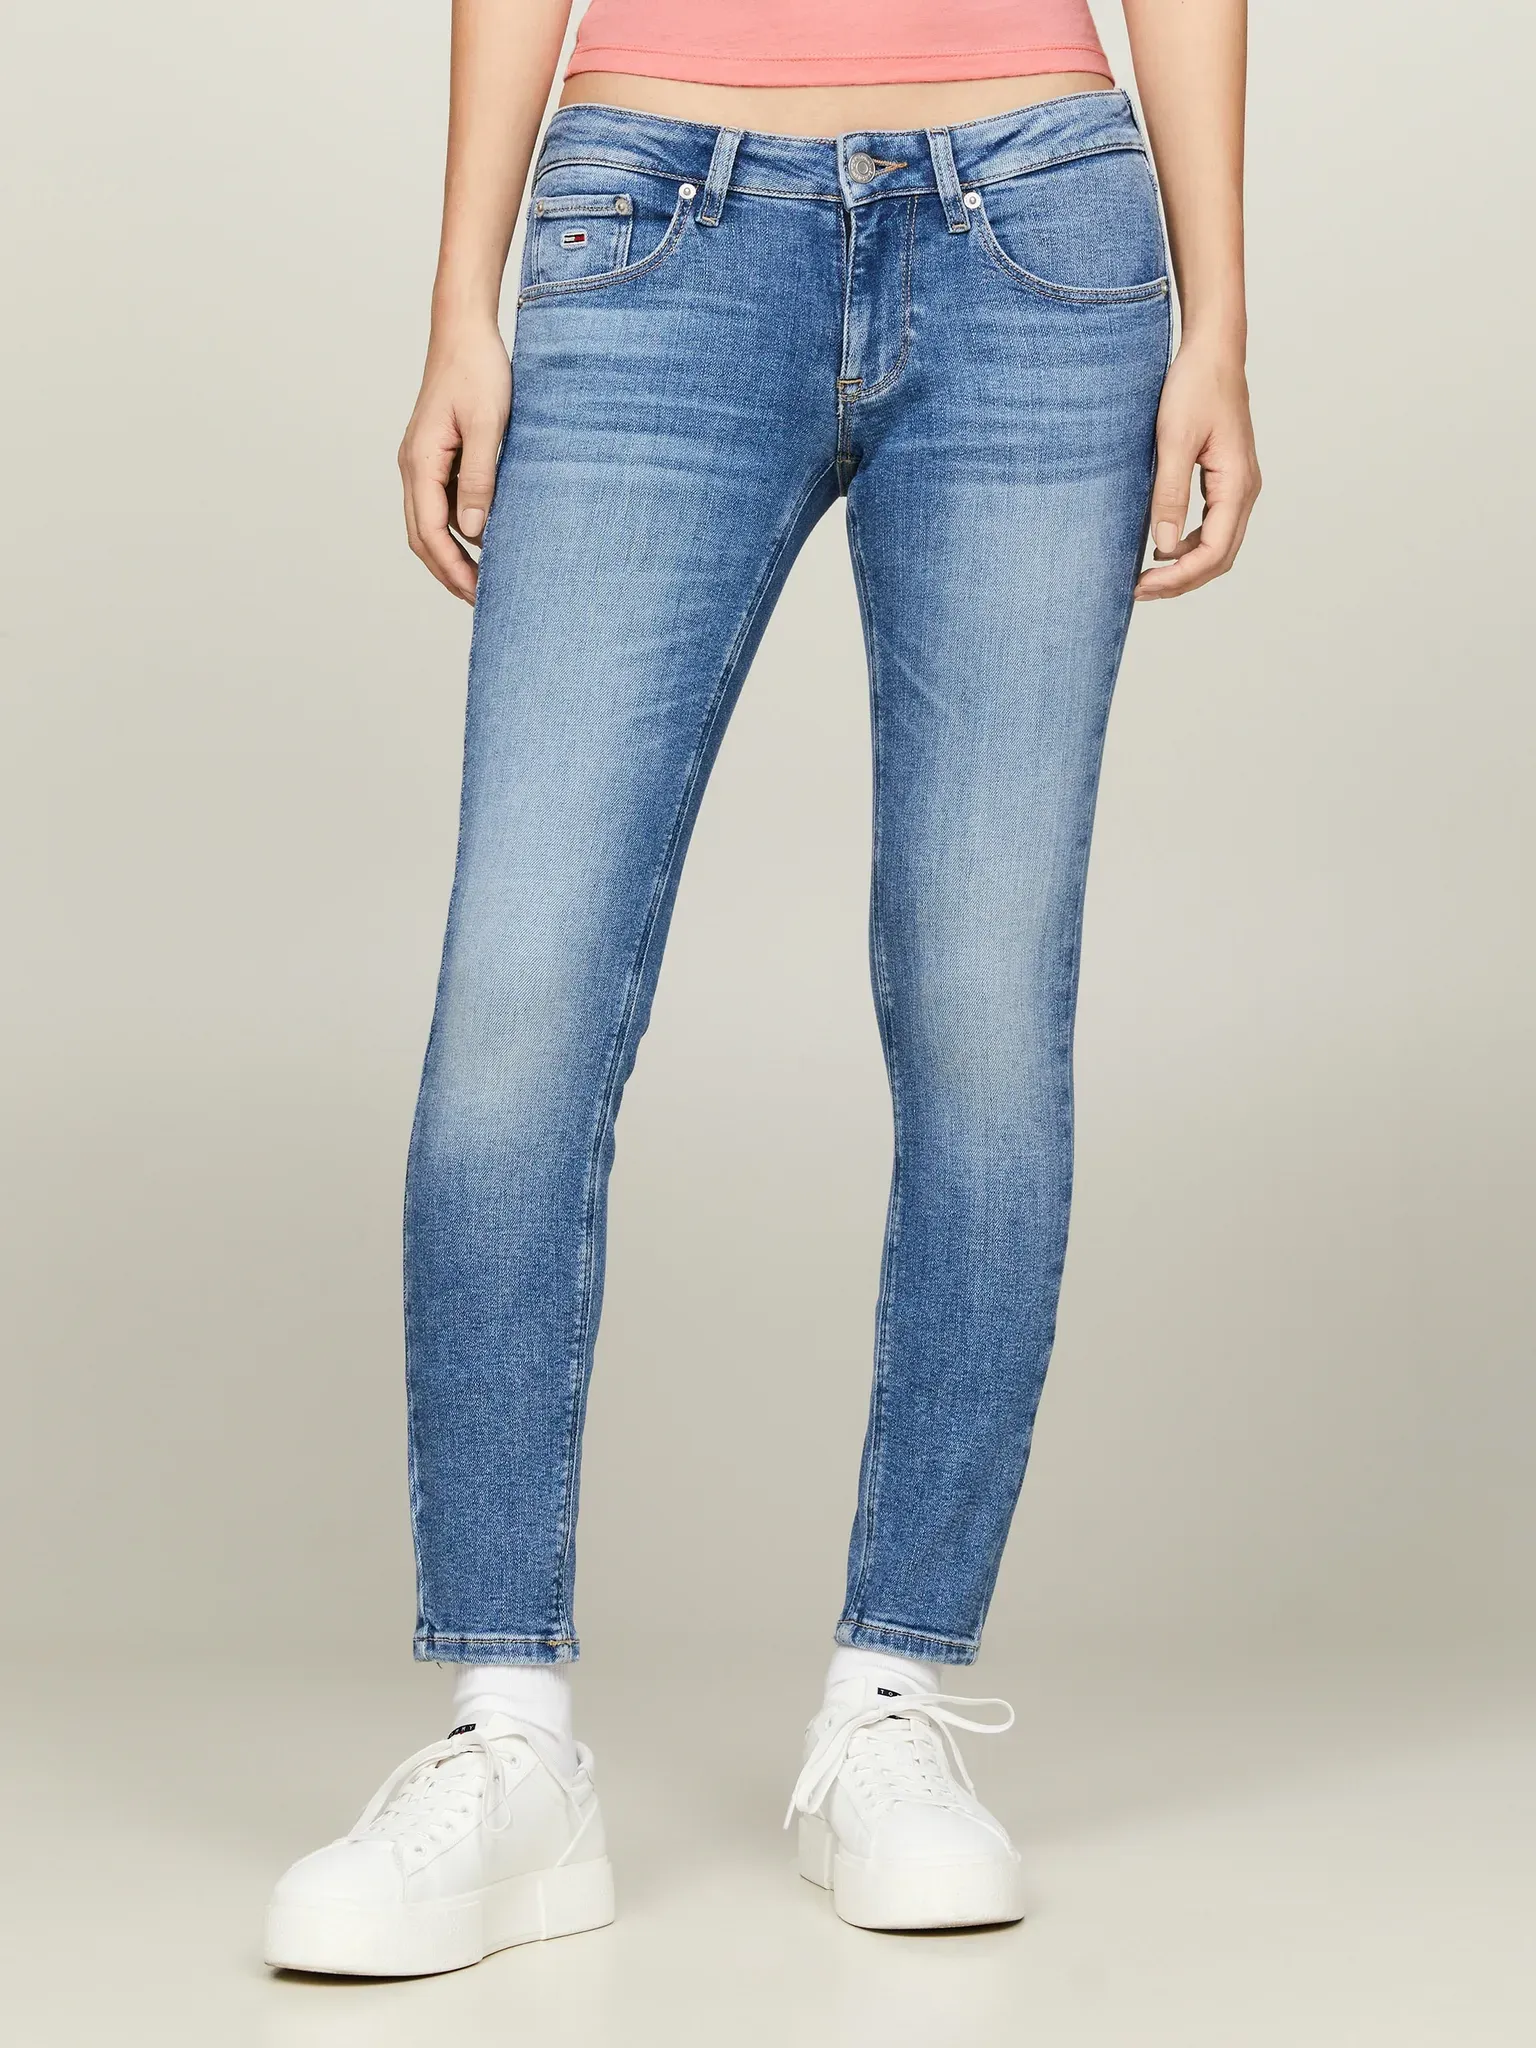 Bequeme Jeans TOMMY JEANS "Scarlett" Gr. 31, Länge 30, blau (mid blue) Damen Jeans mit Ledermarkenlabel